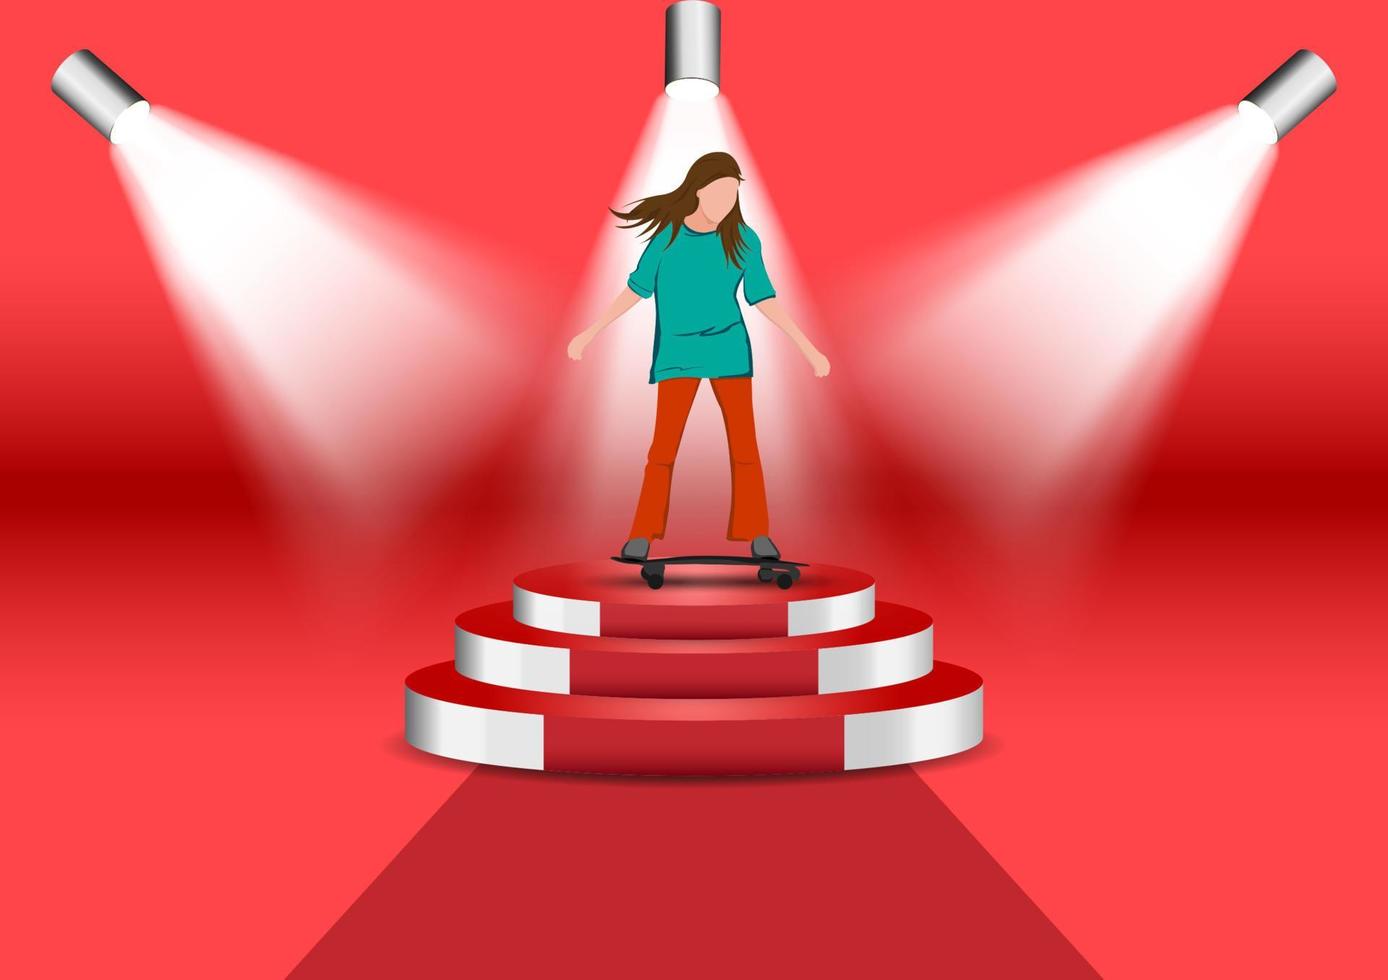 Grafikbild Mädchen-Cartoon-Figur, die auf einem Skateboard oder Surf-Skate reitet, das auf dem Podium steht, mit Scheinwerfer-rotem Hintergrund, Vektorgrafik vektor